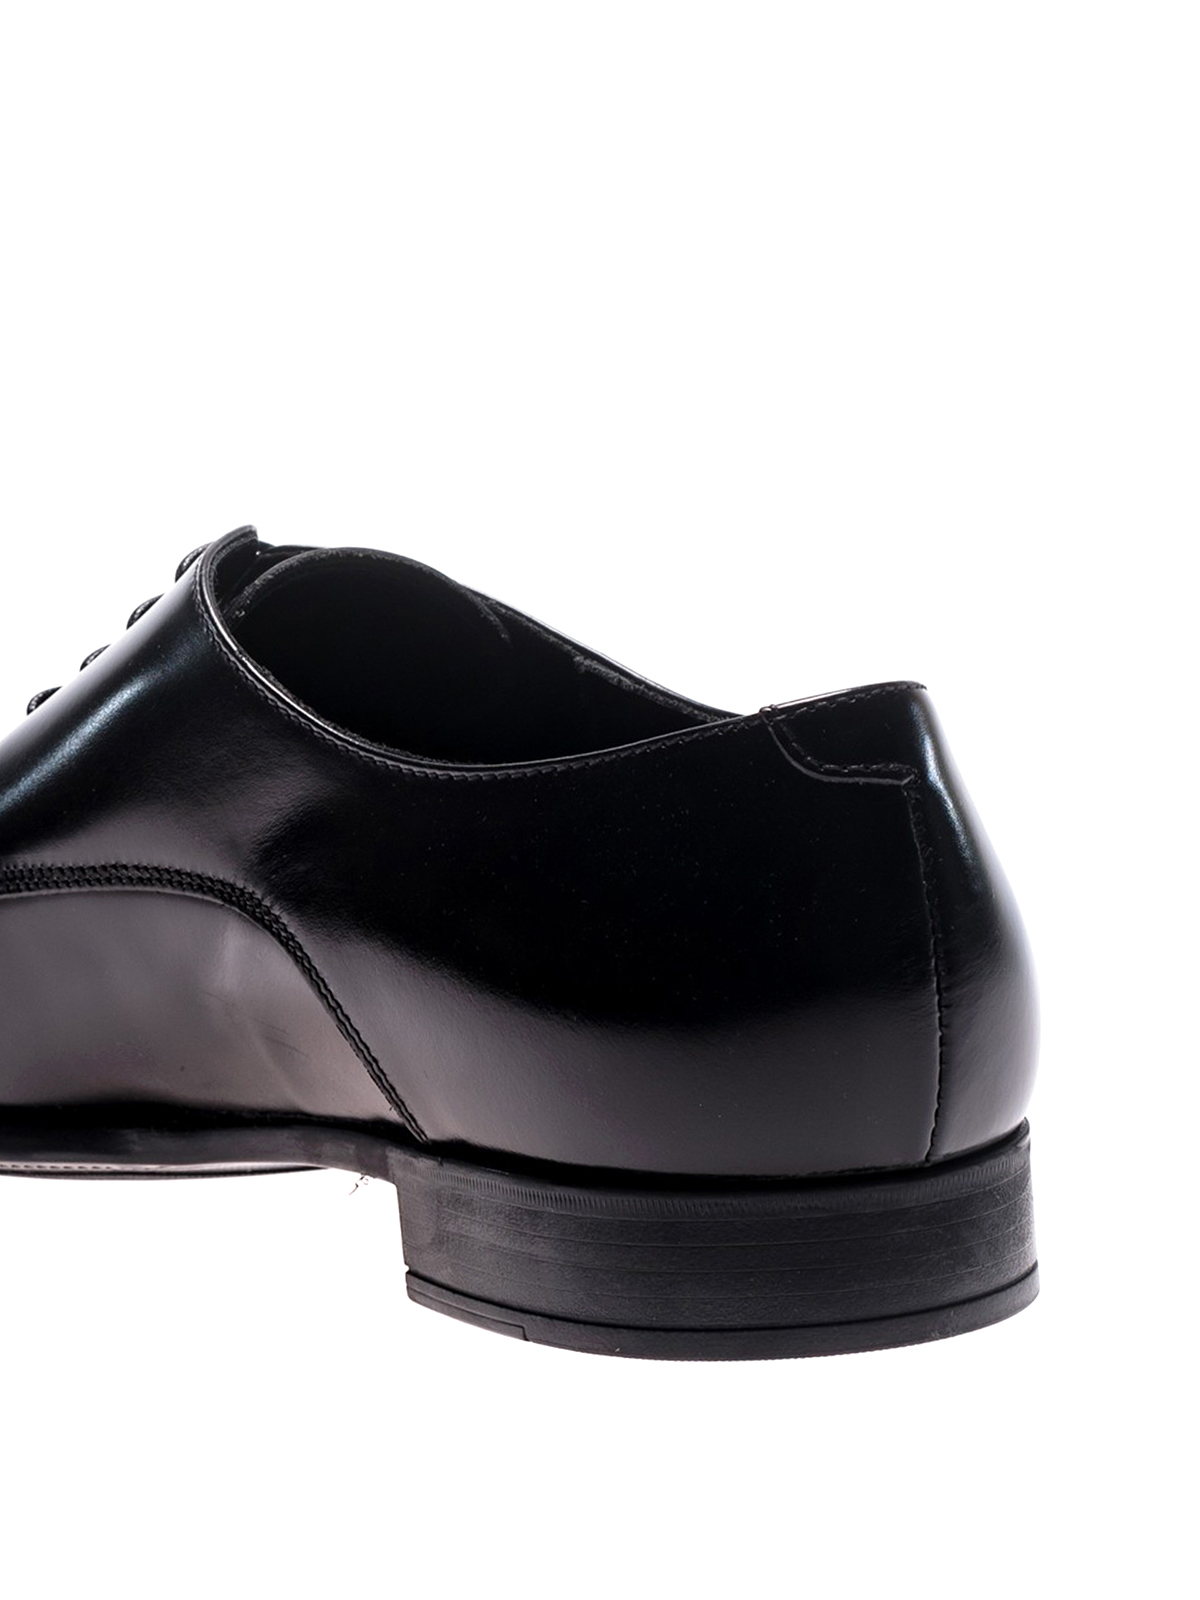 doucal's shoes online shop